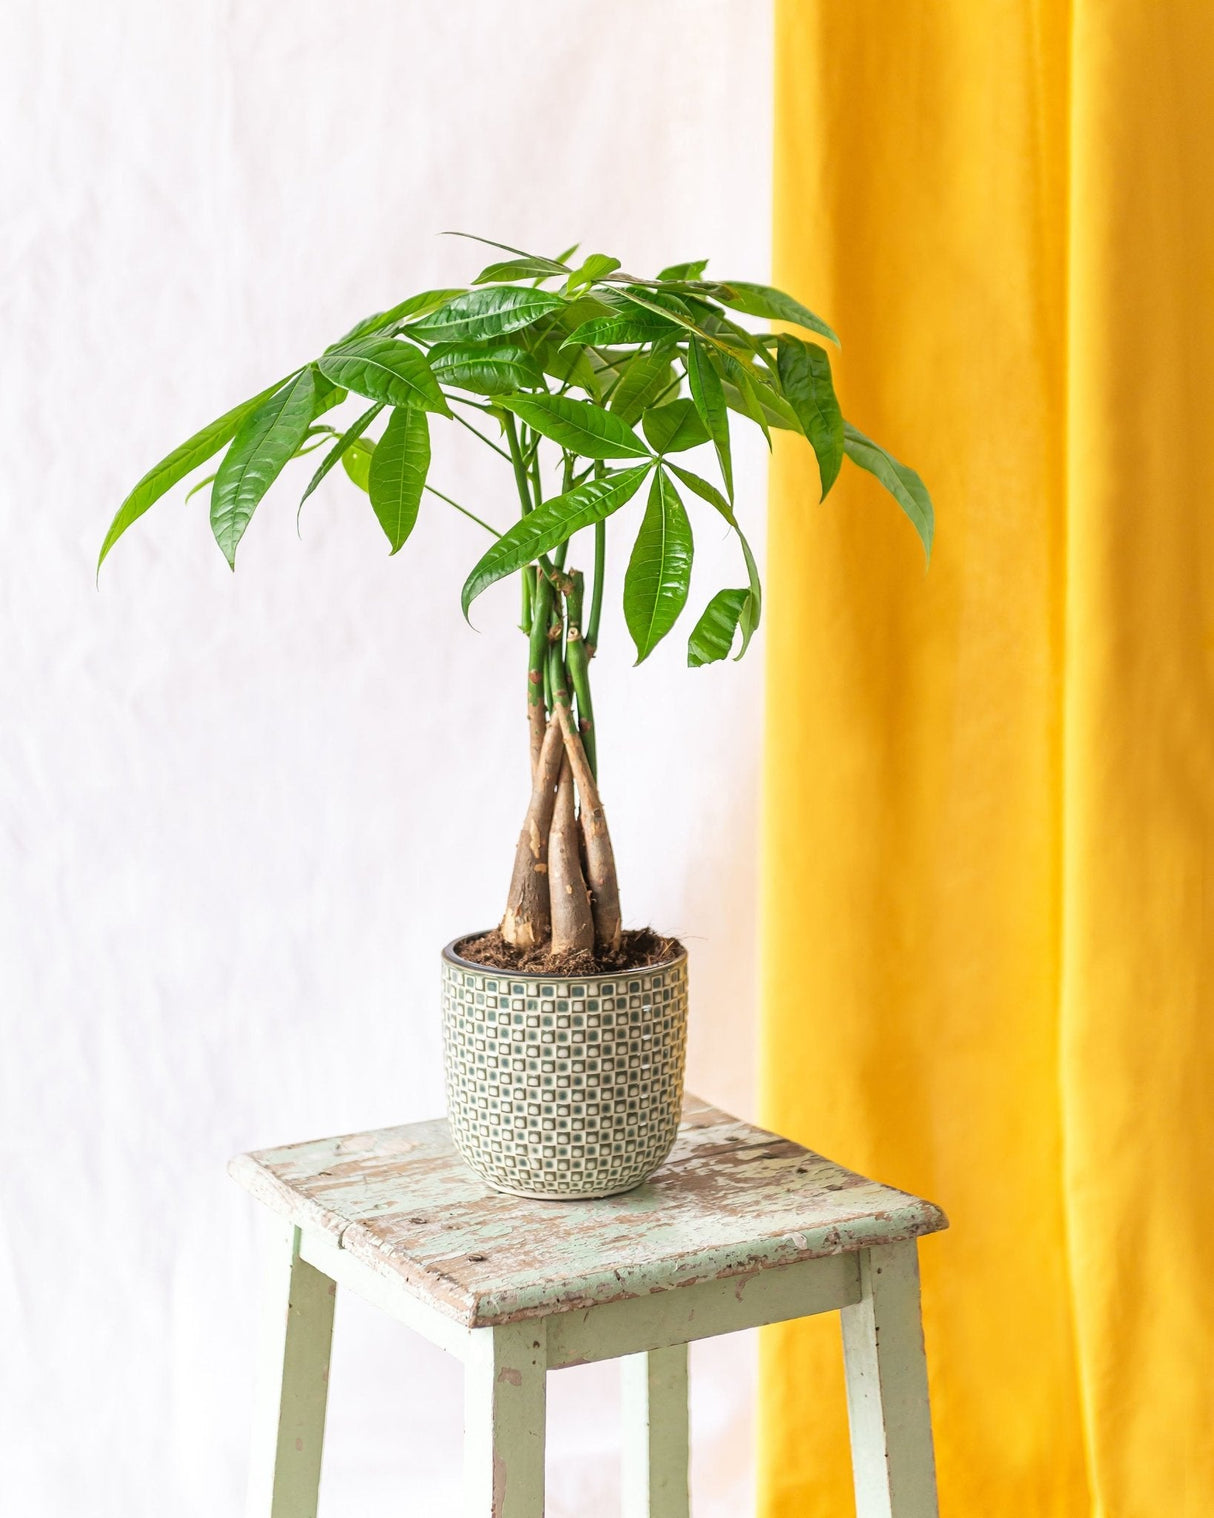 Pachira tronc tressé plante d'intérieur facile d'entretien – La